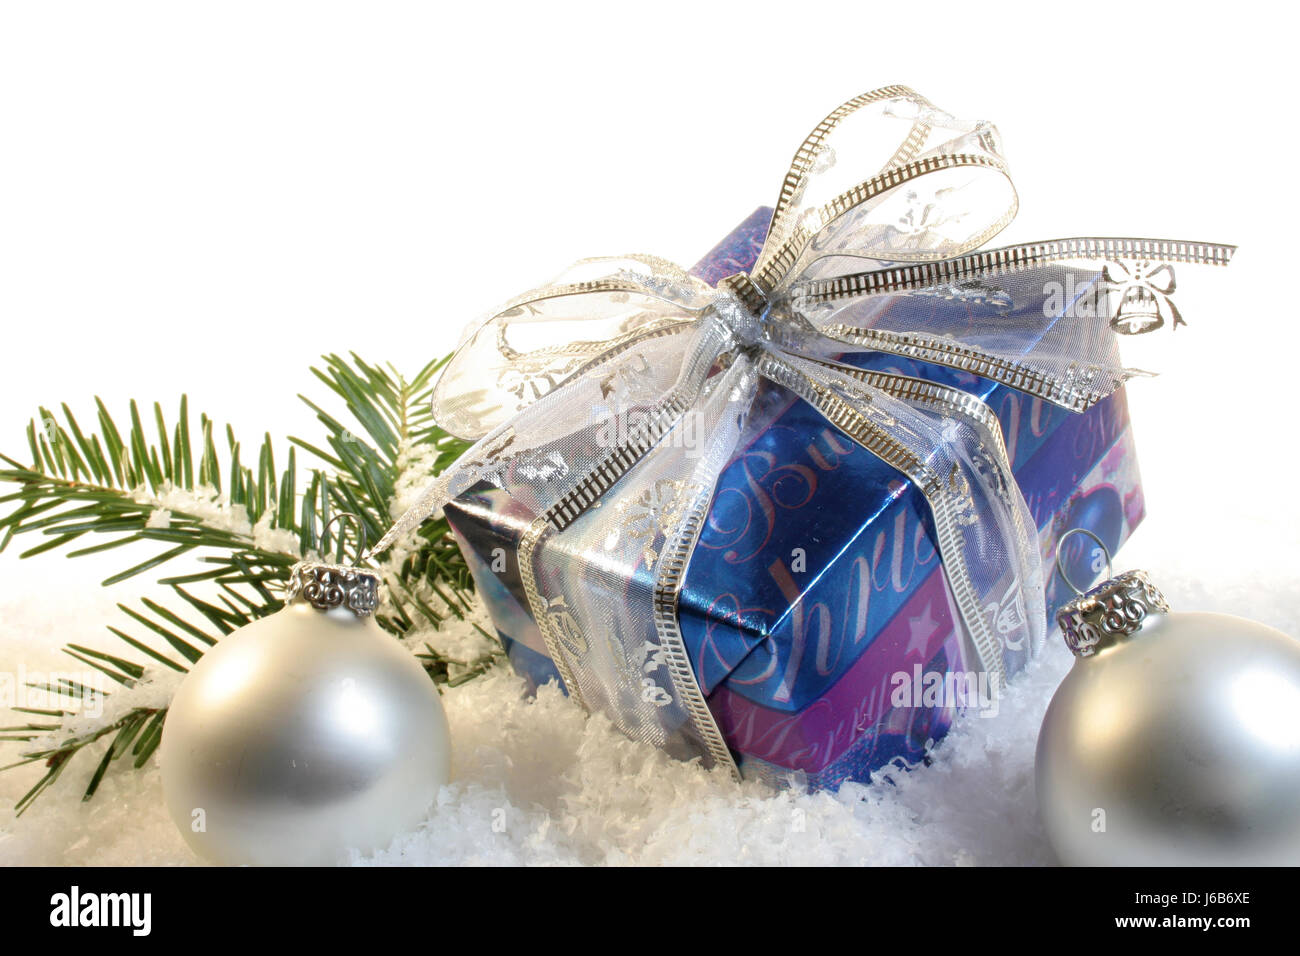 weihnachten weihnachtsgeschenk advent tanne christbaumkugeln schnee geschenk Stock Photo